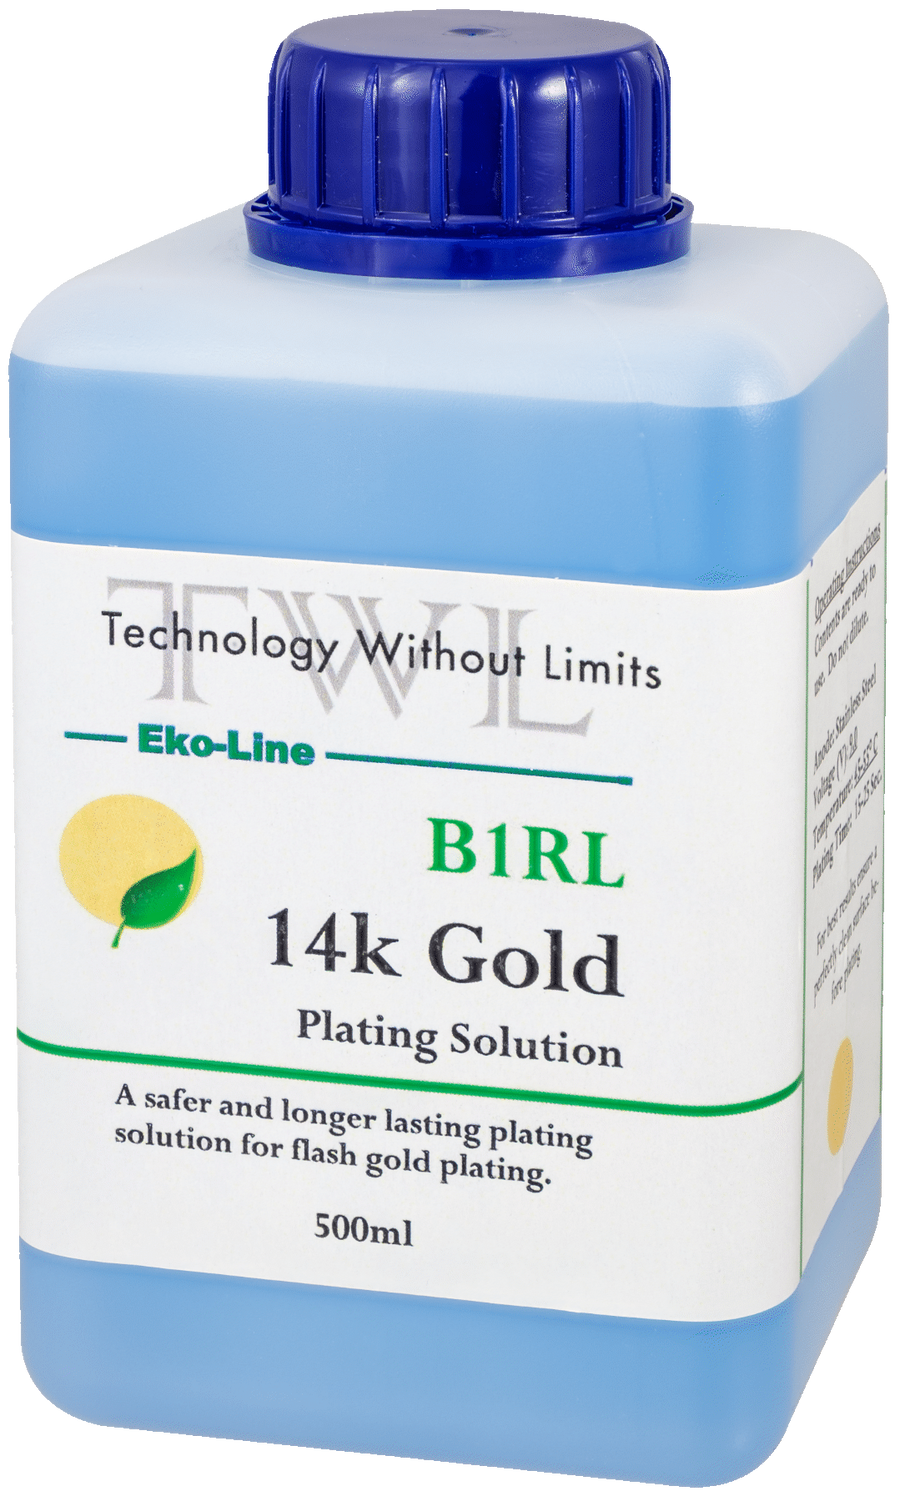 B1RL 14k Gold Plating Solution 500 ml. Eko-Line